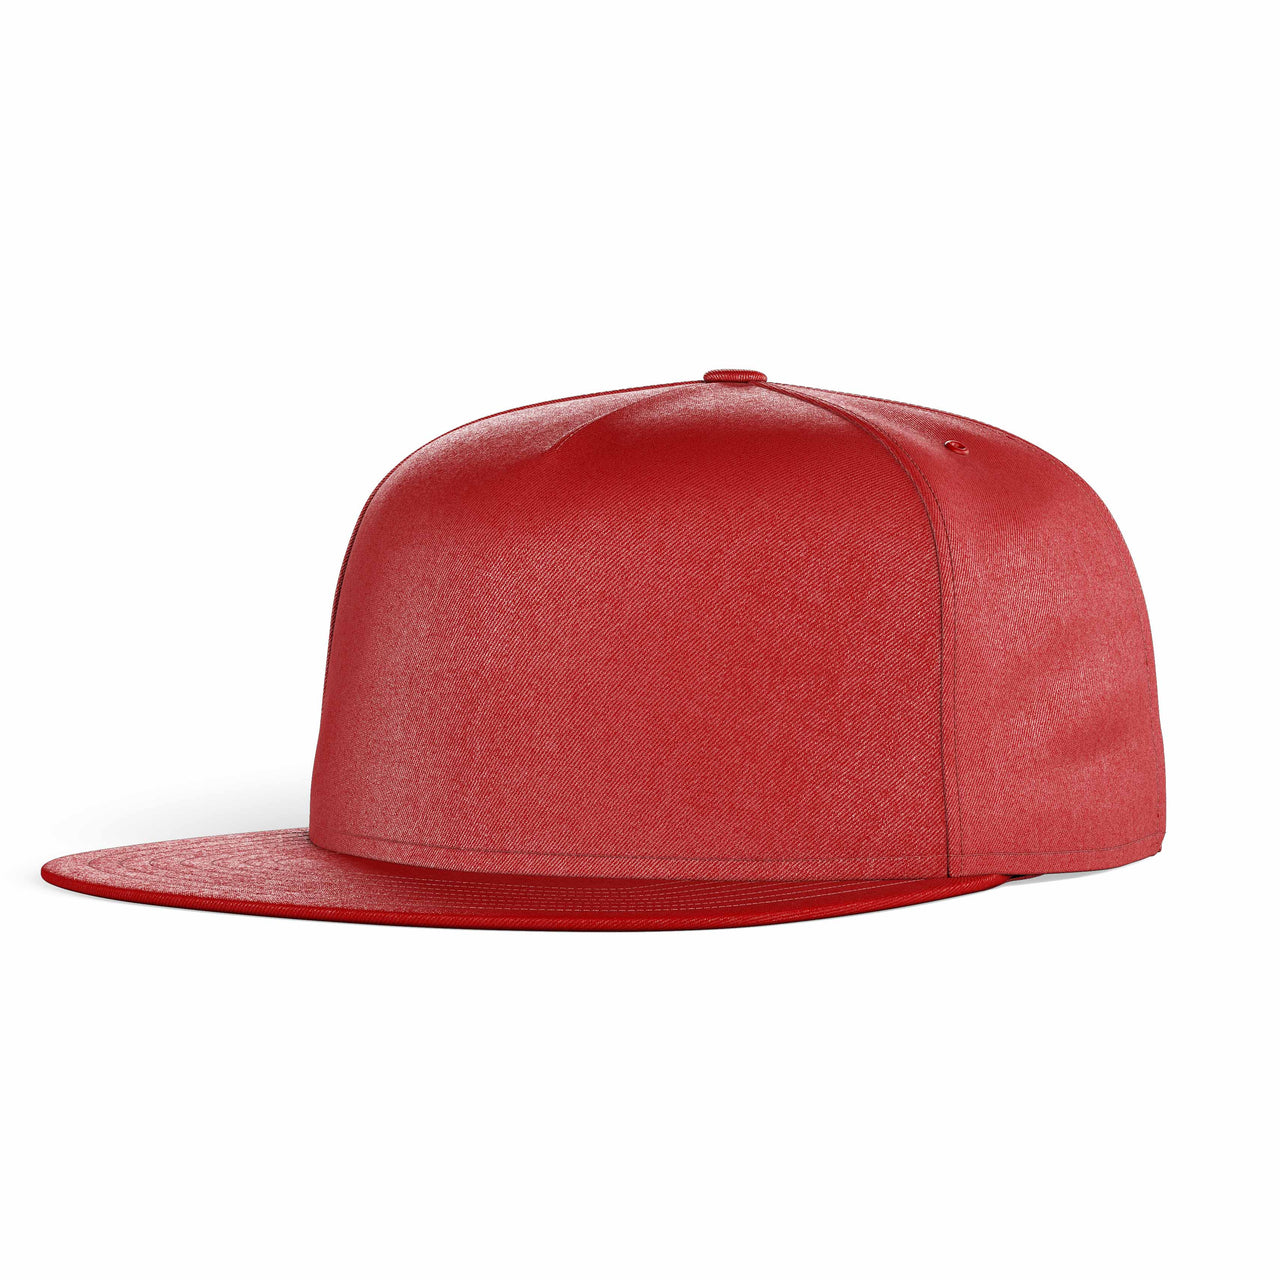 NO Color Super Quality Snapback Caps & Hats